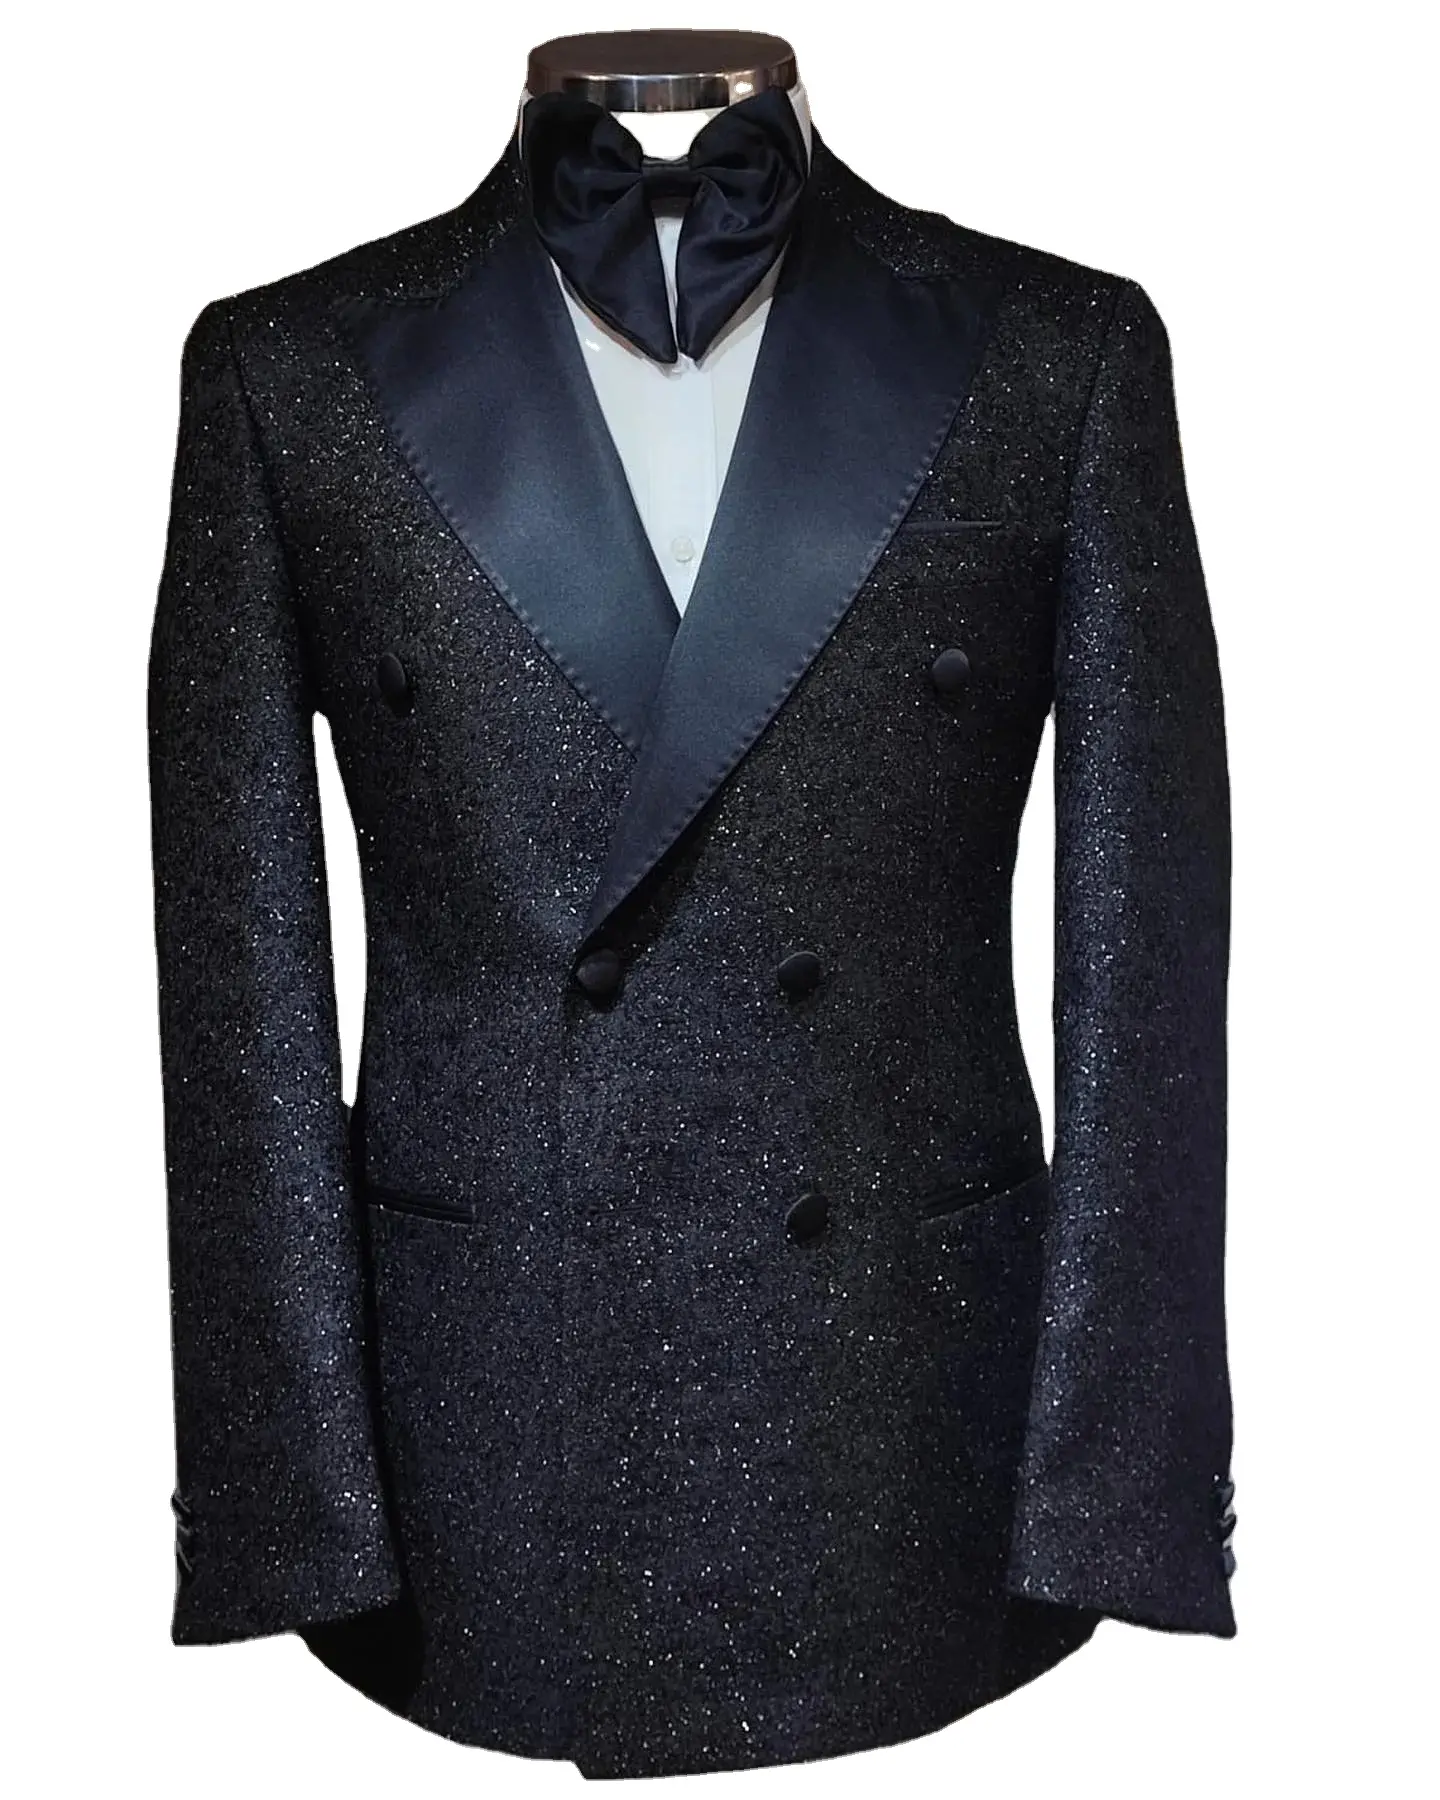 Ismarlama terzi yapılan erkek parlak sim takım elbise 2 parça takım elbise için bir düğme smokin parti düğün ziyafet balo Suit